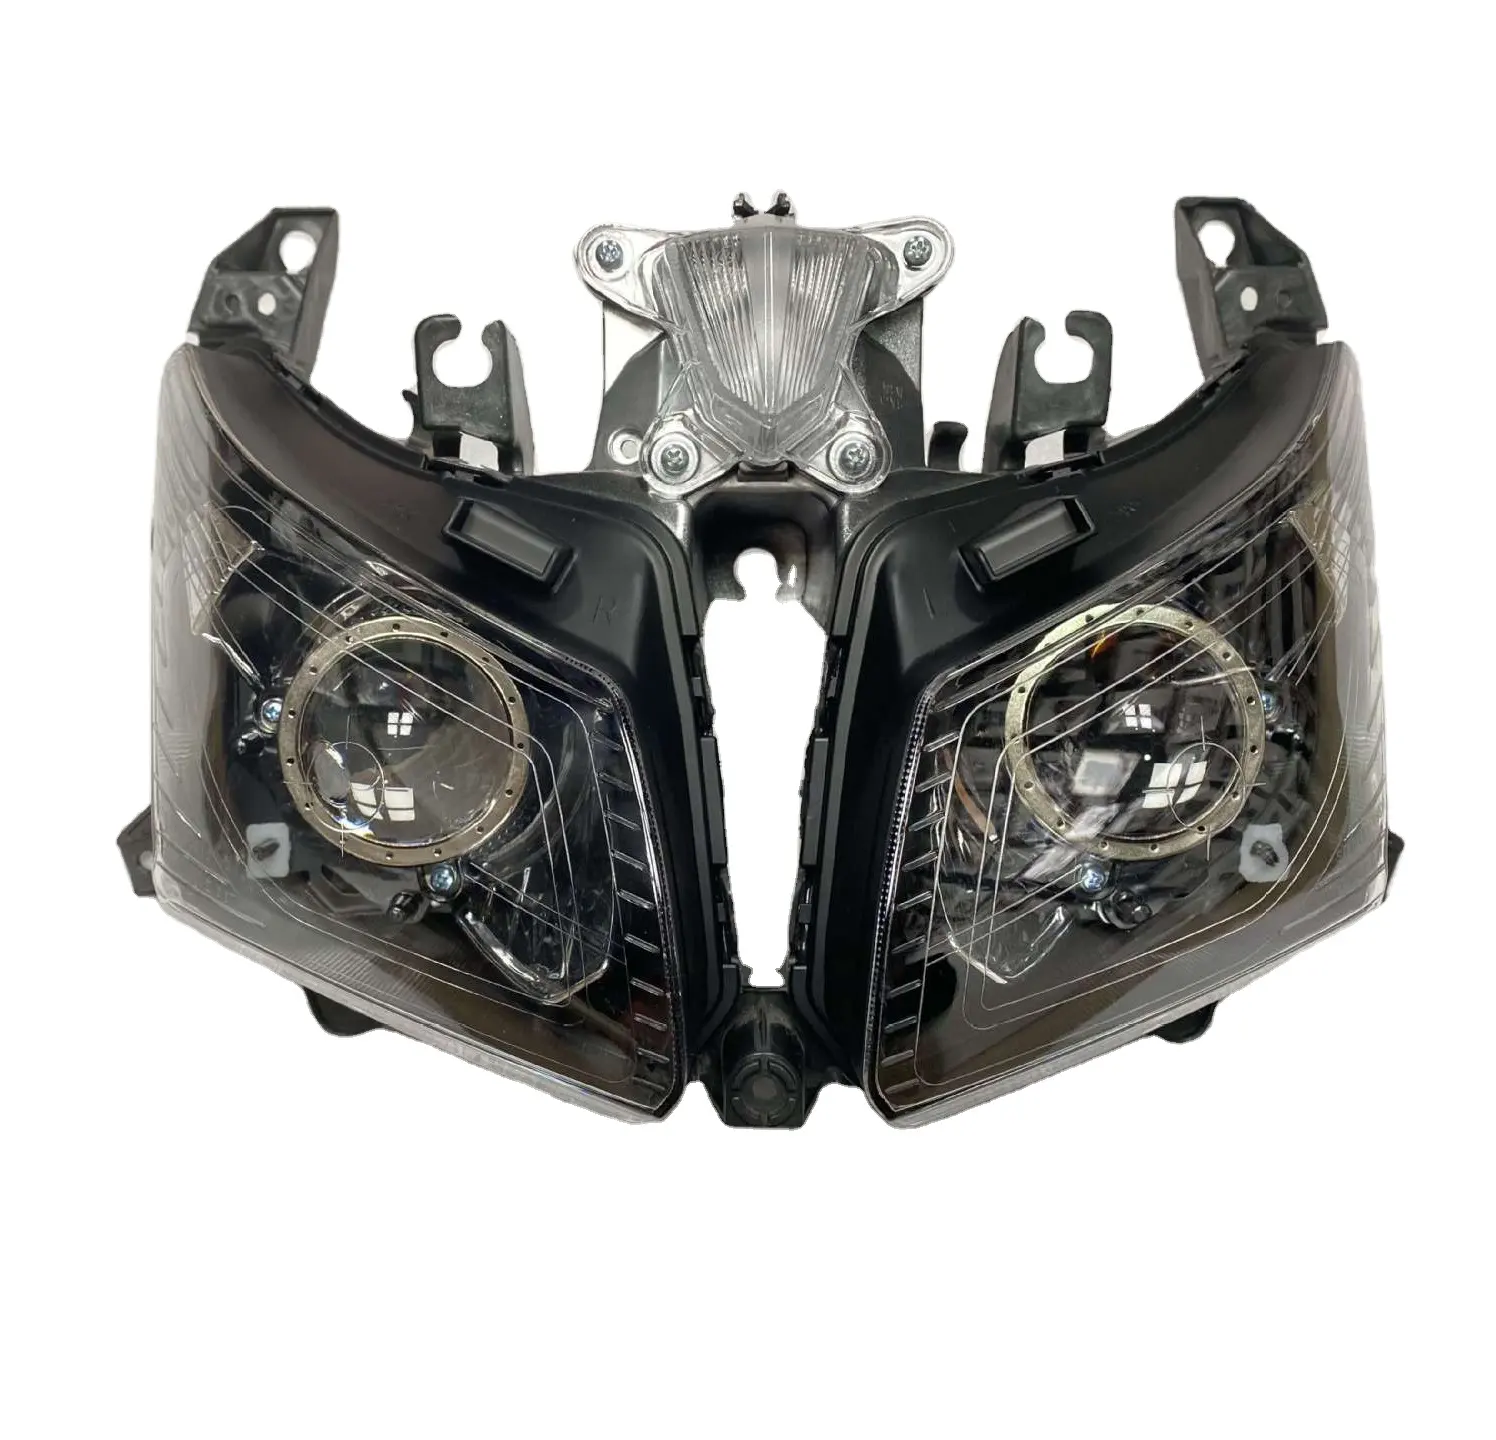 Clear Headligtt Tmax530 For Motorcycle Head Lihgt Head Lamp For Yamaha TMAX-530 2012 2013 2014